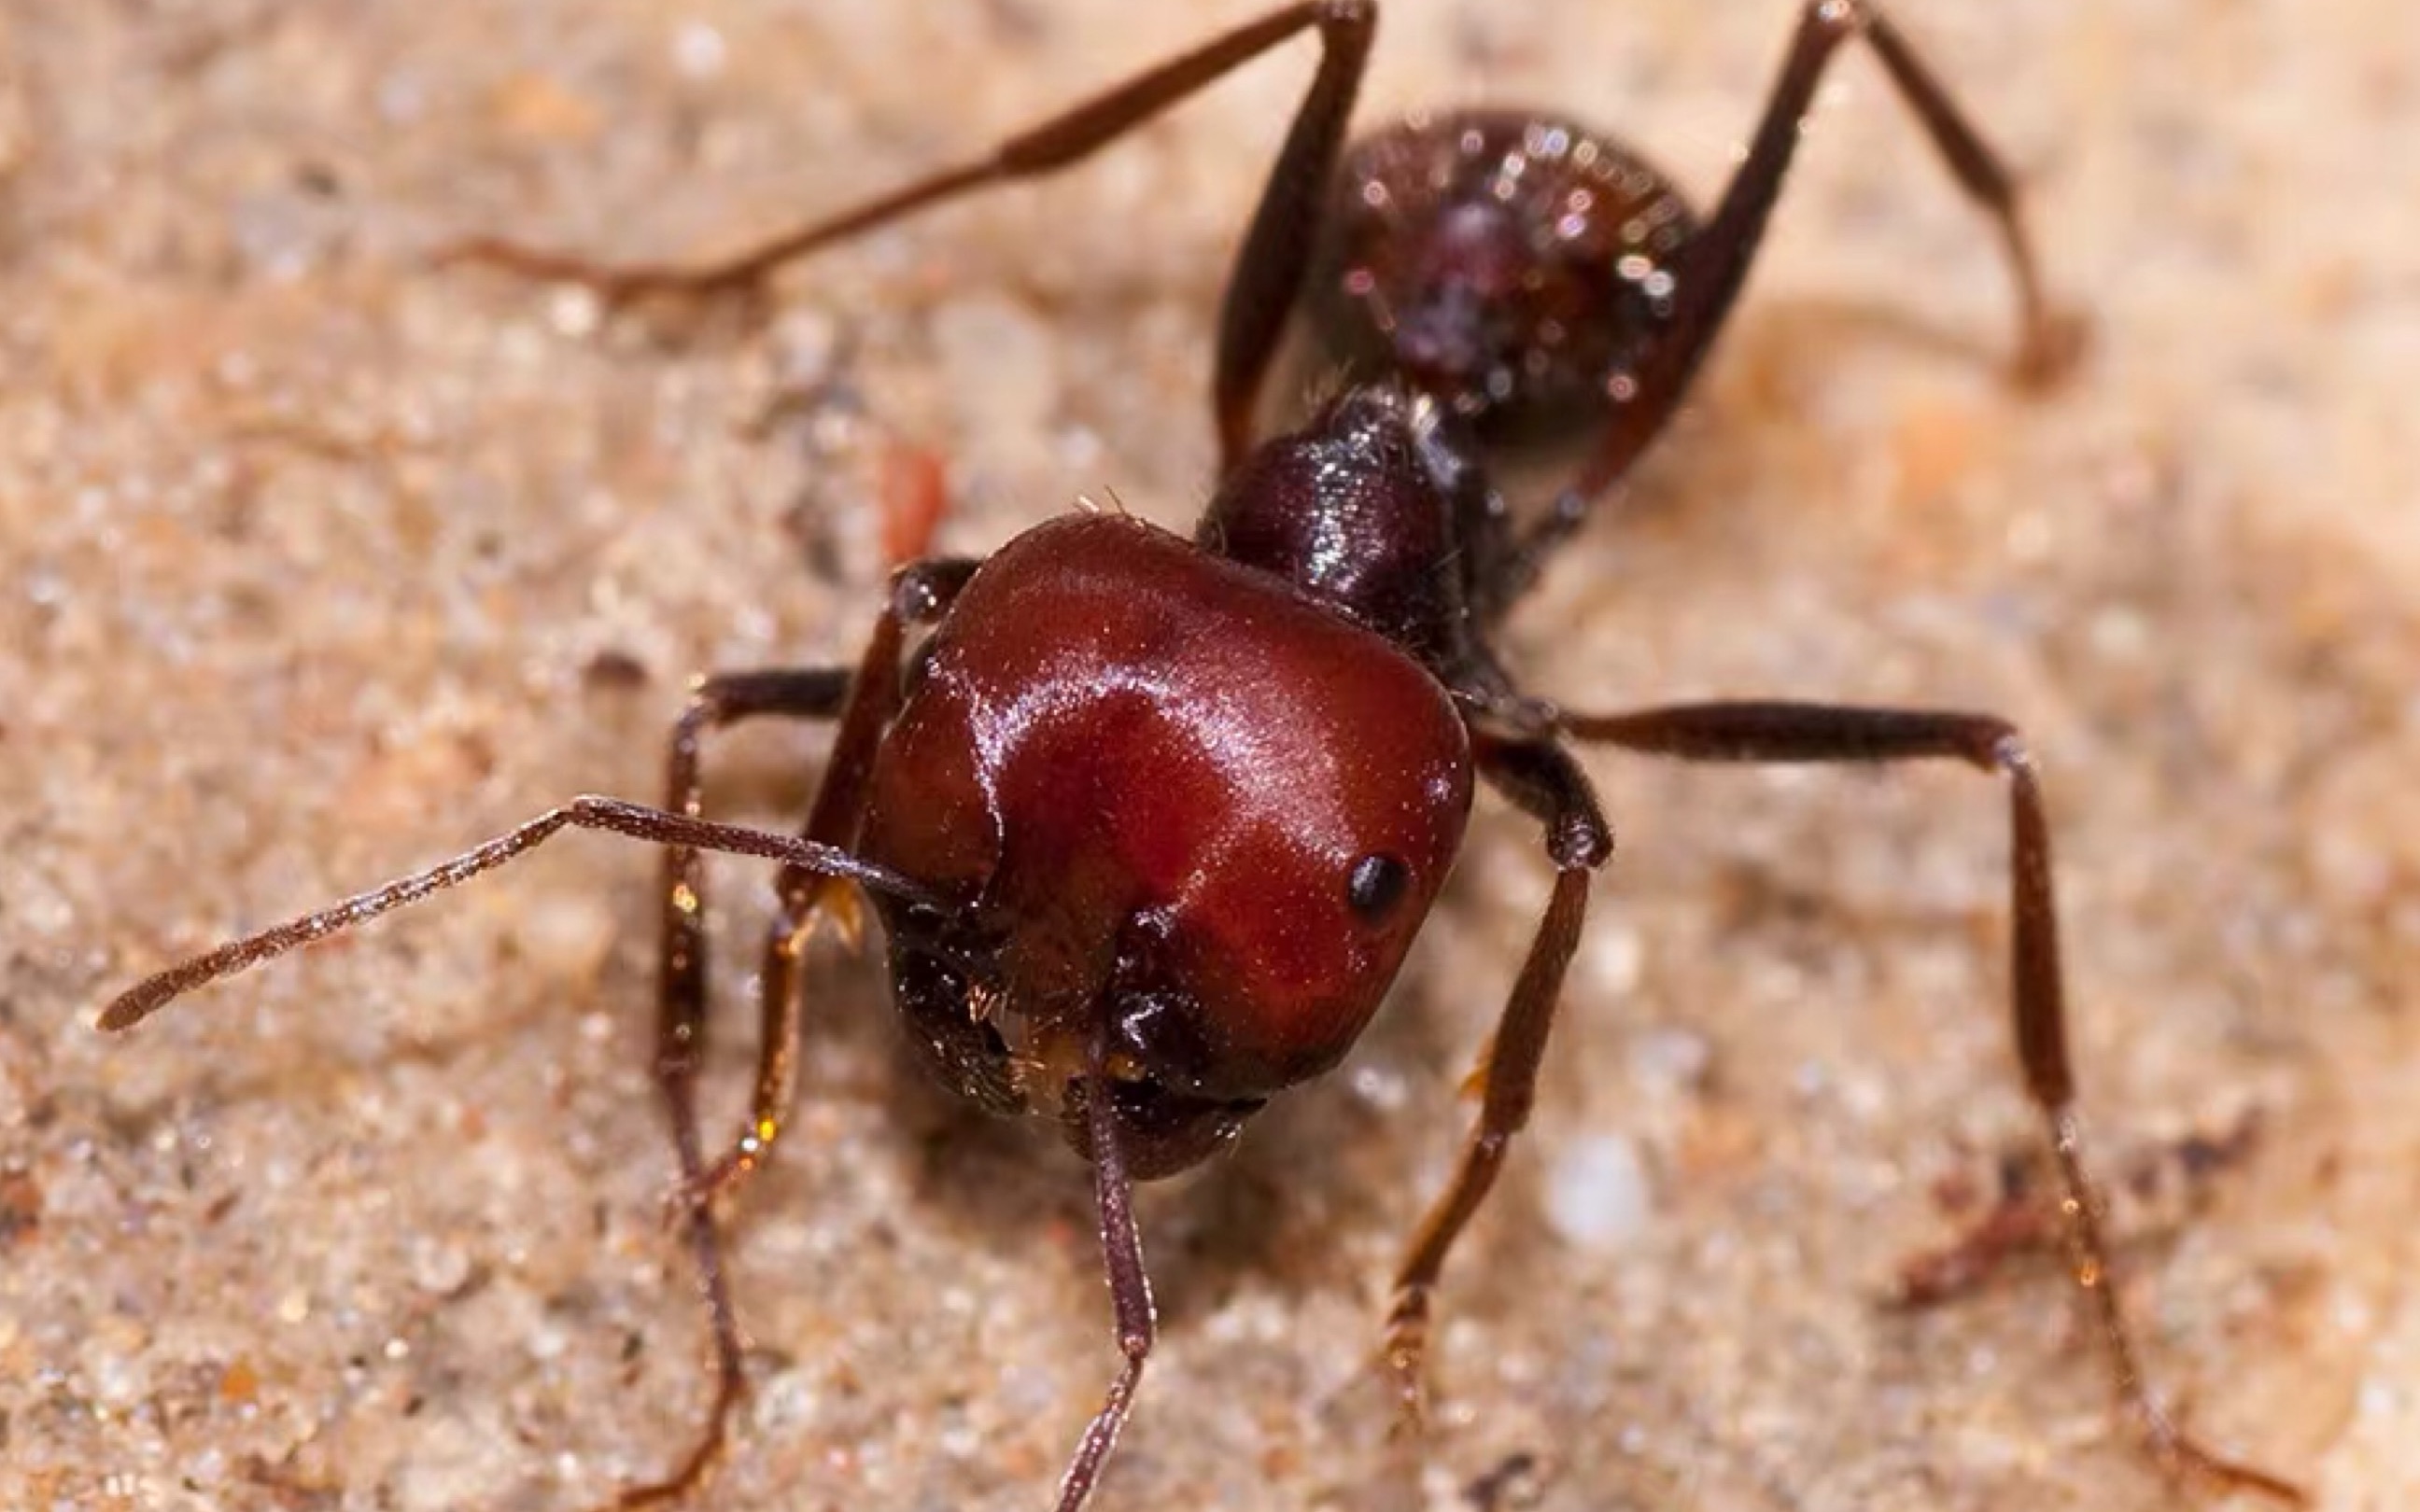 可能是b站最强画质up主饲养的大大的红蚂蚁全红警告